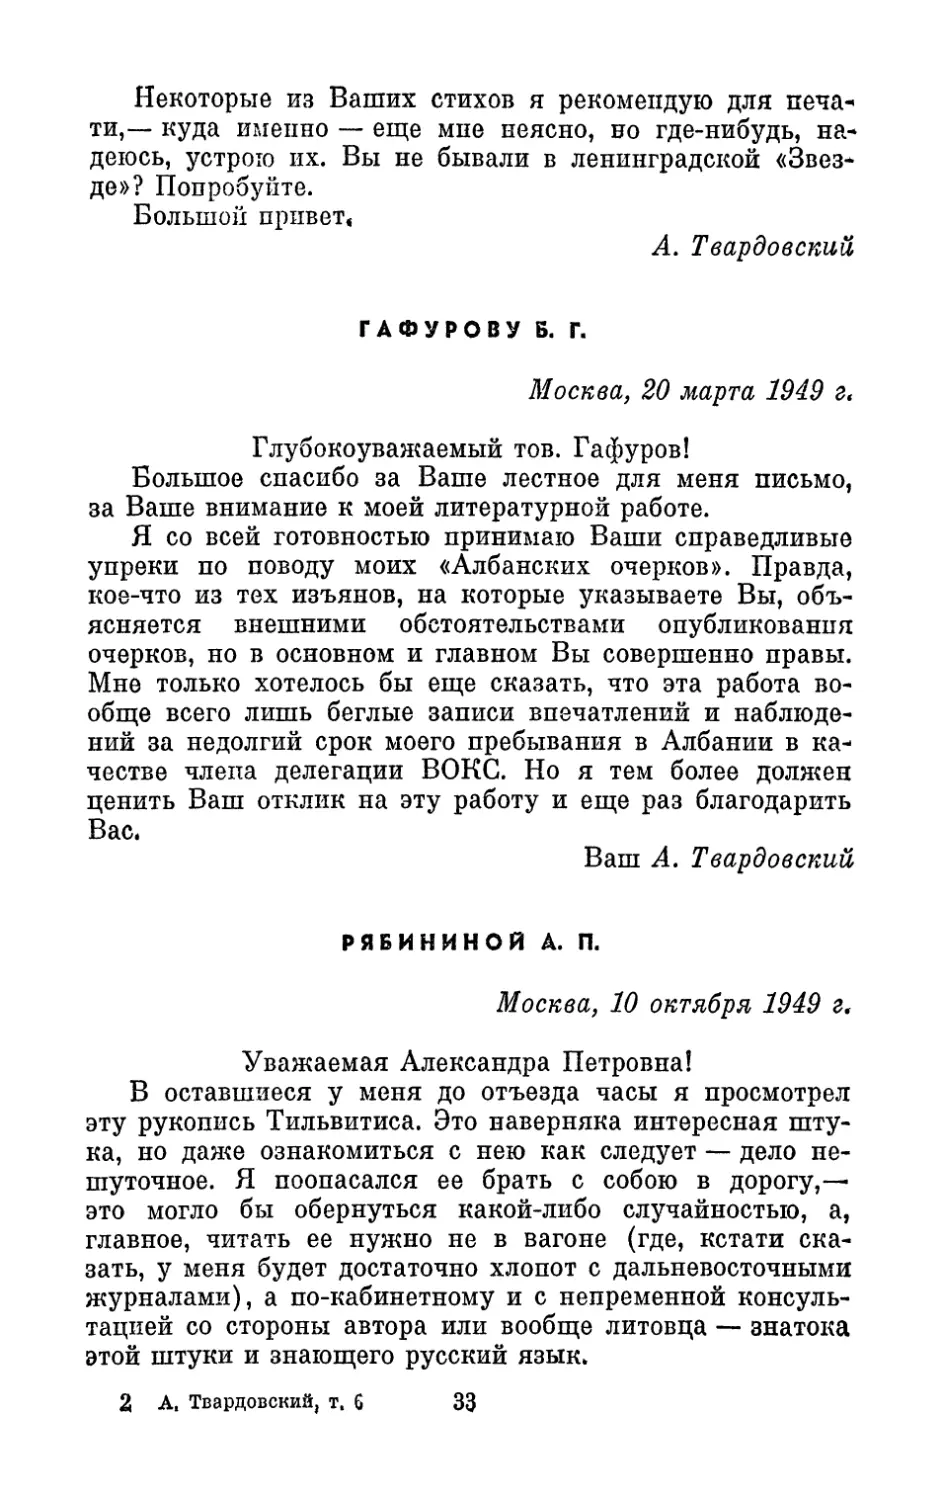 Гафурову Б. Г., 20 марта 1949 г.
Рябининой А. П., 10 октября 1949 г.